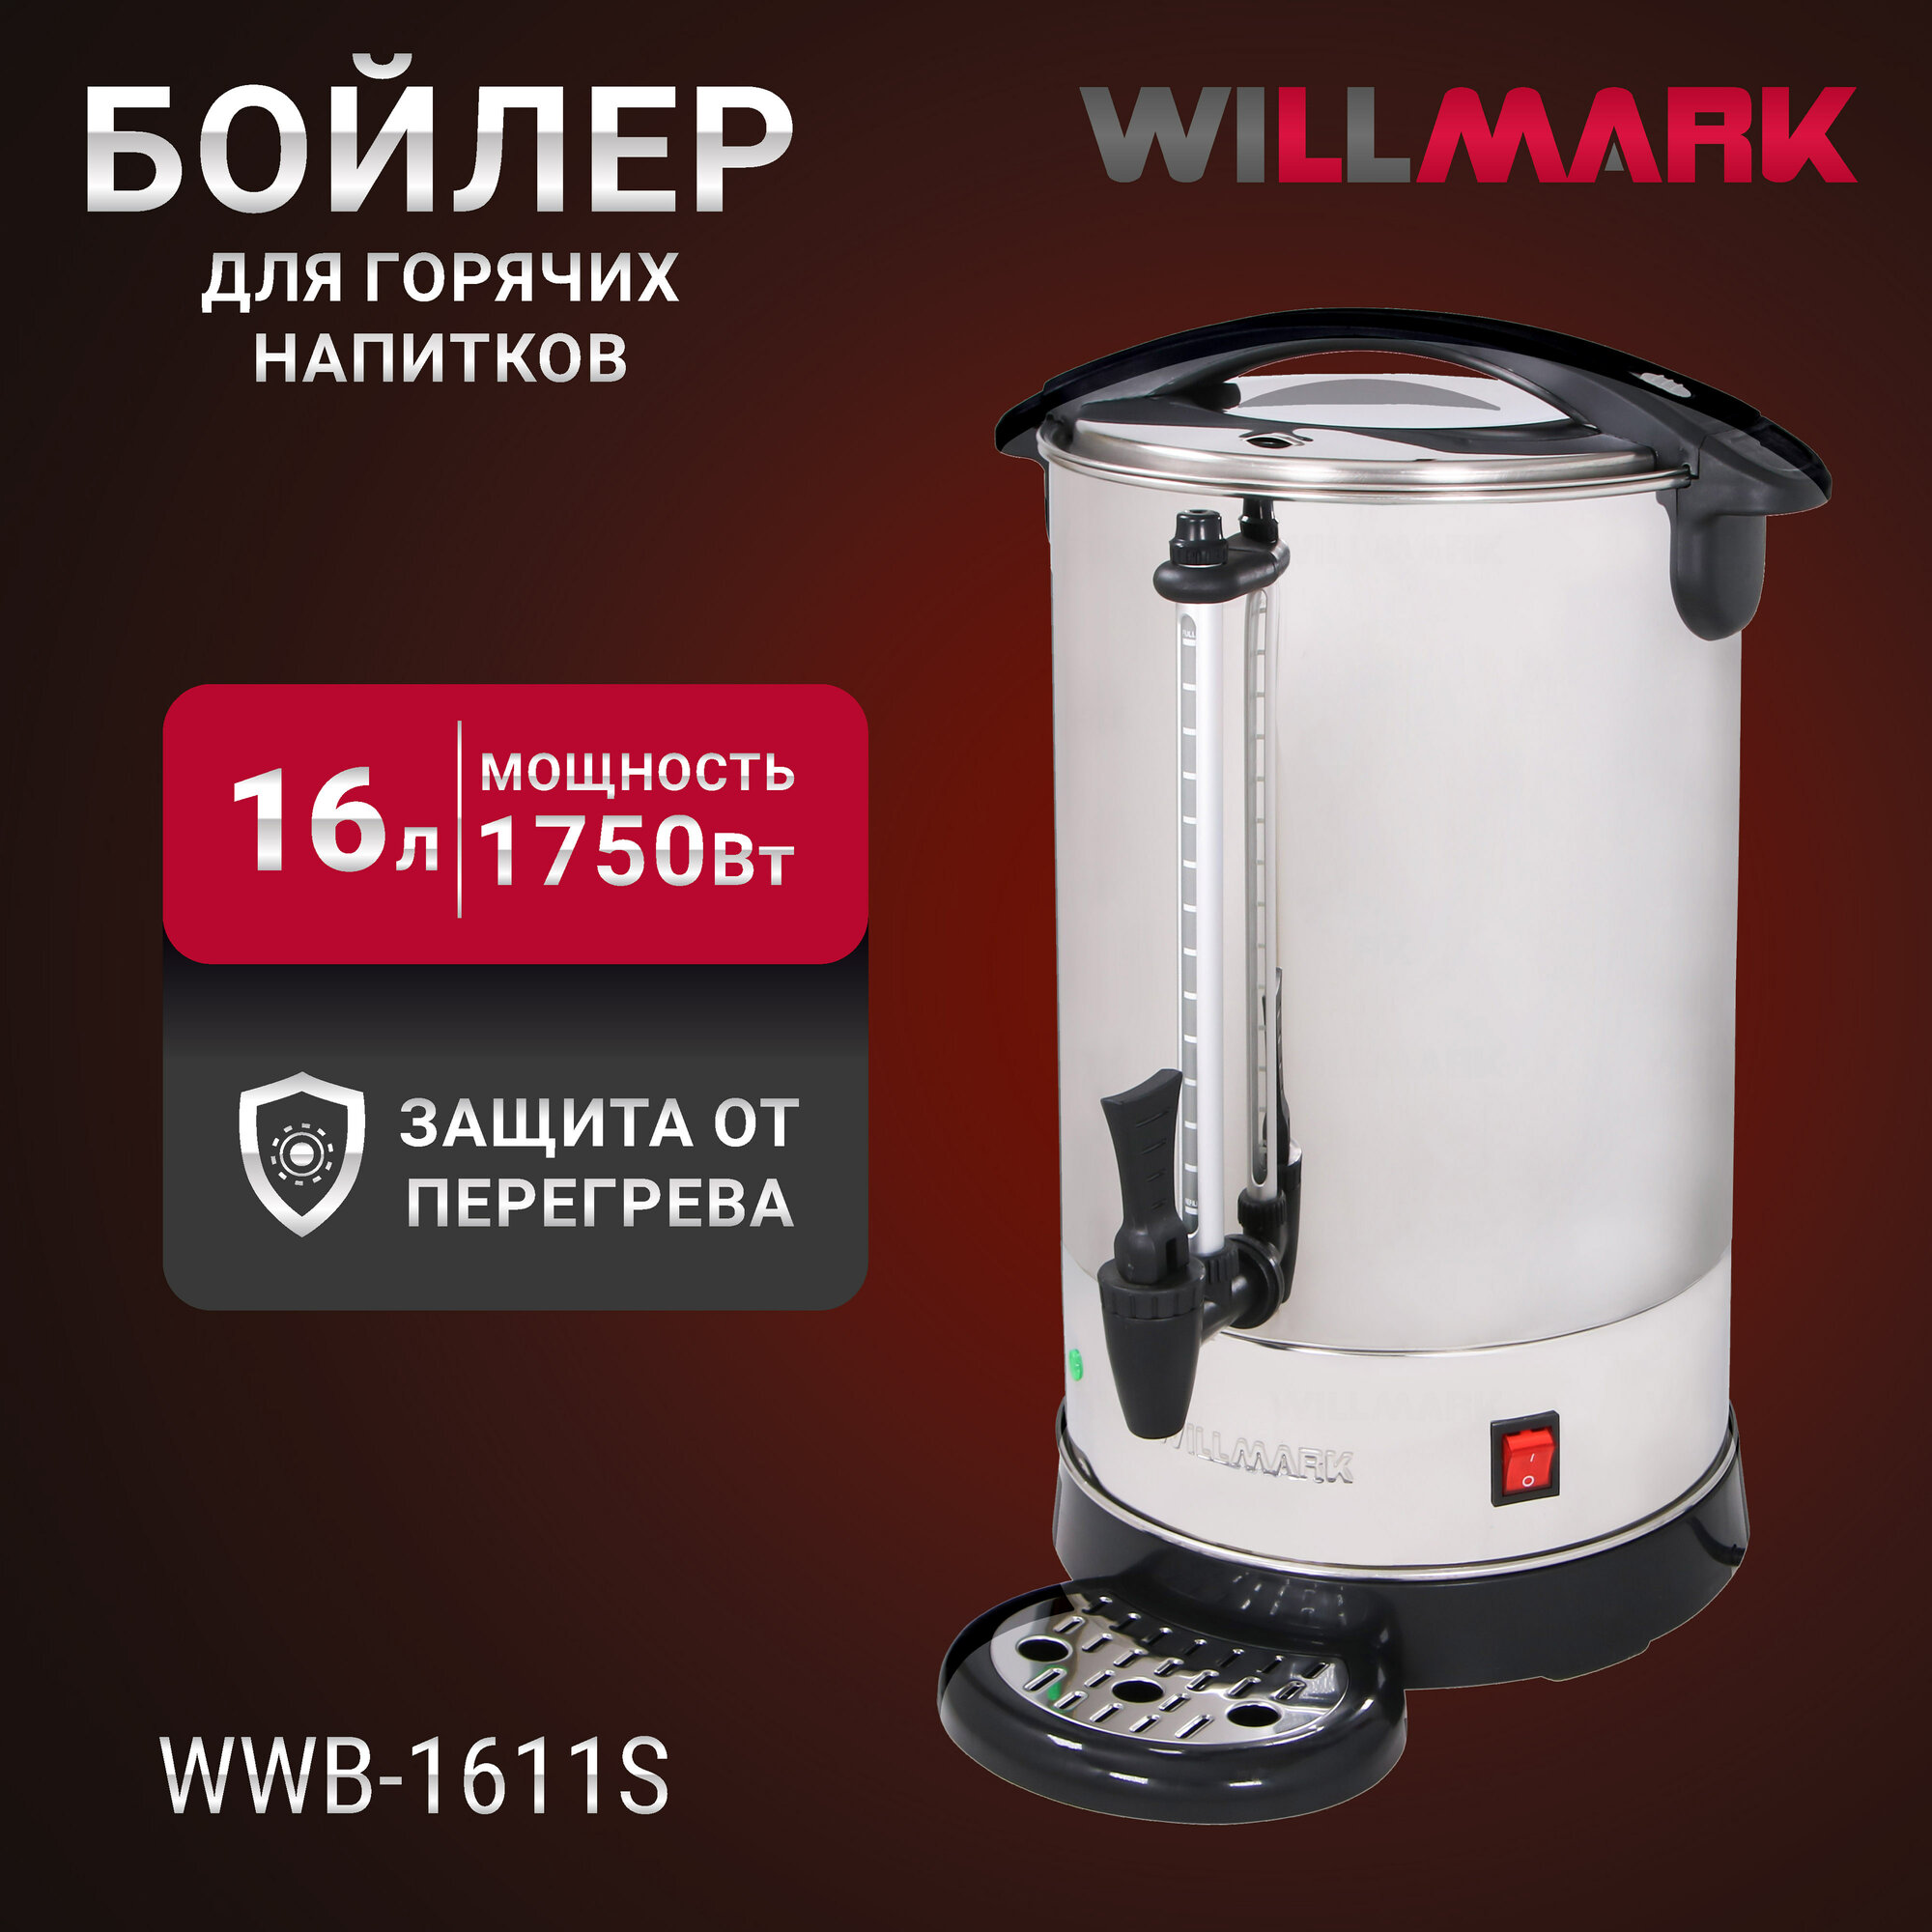 Бойлер для горячих напитков WILLMARK WWB-1611S (16л 1750Вт подд. темп шкала уровня воды мет. поддон)